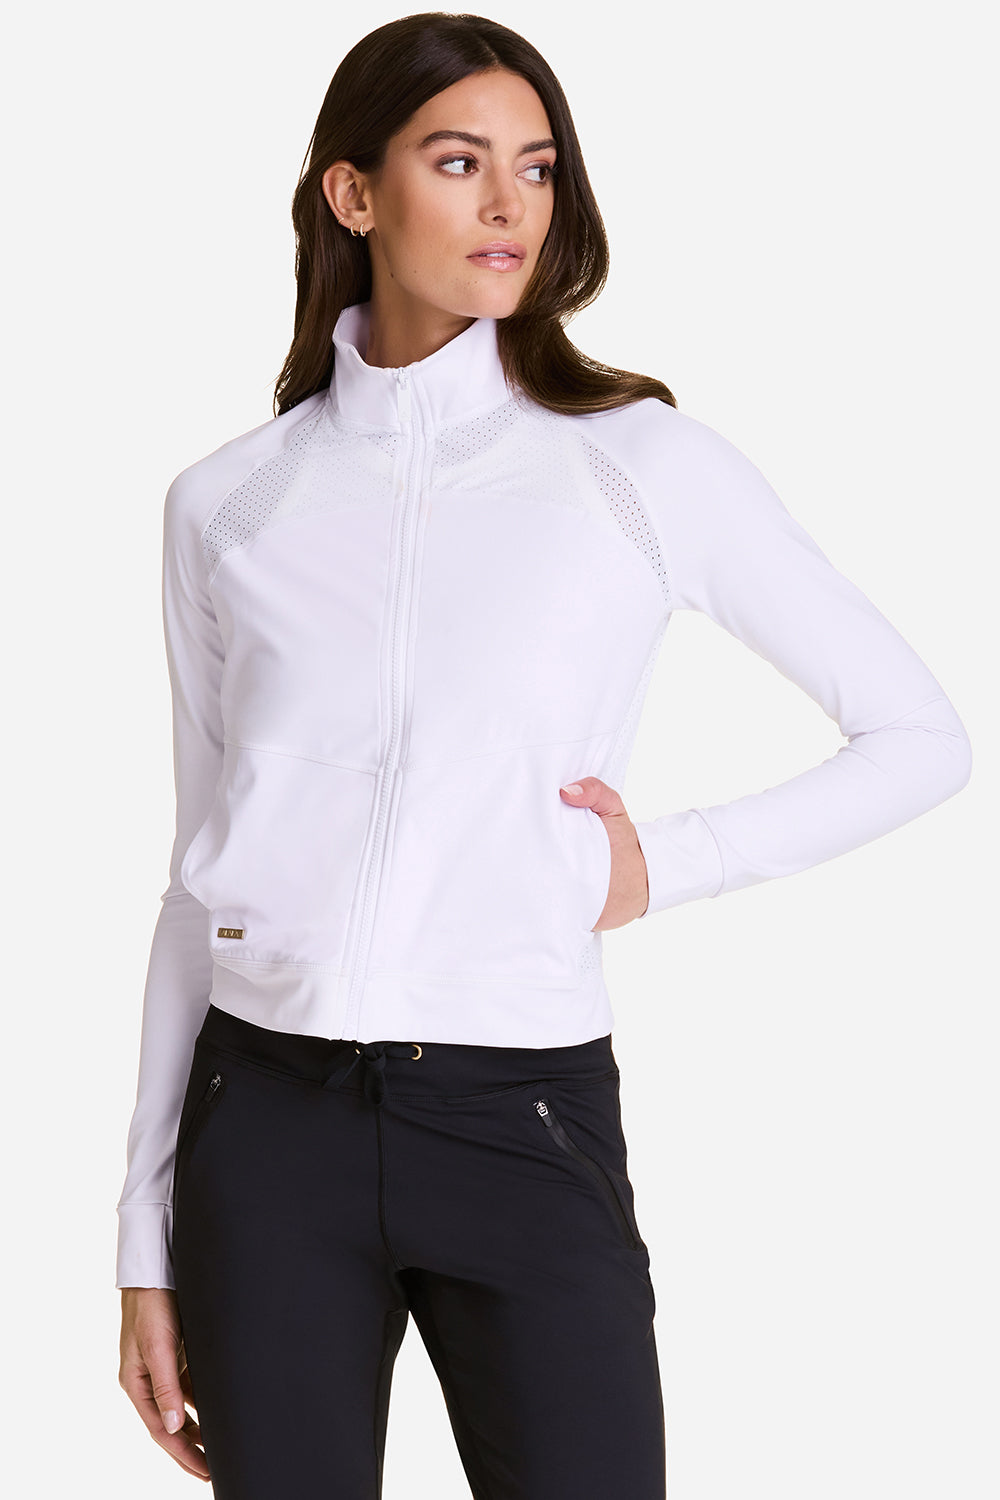 Ace Jacket - White Tennis Jacket, Athletic Jacket Womens